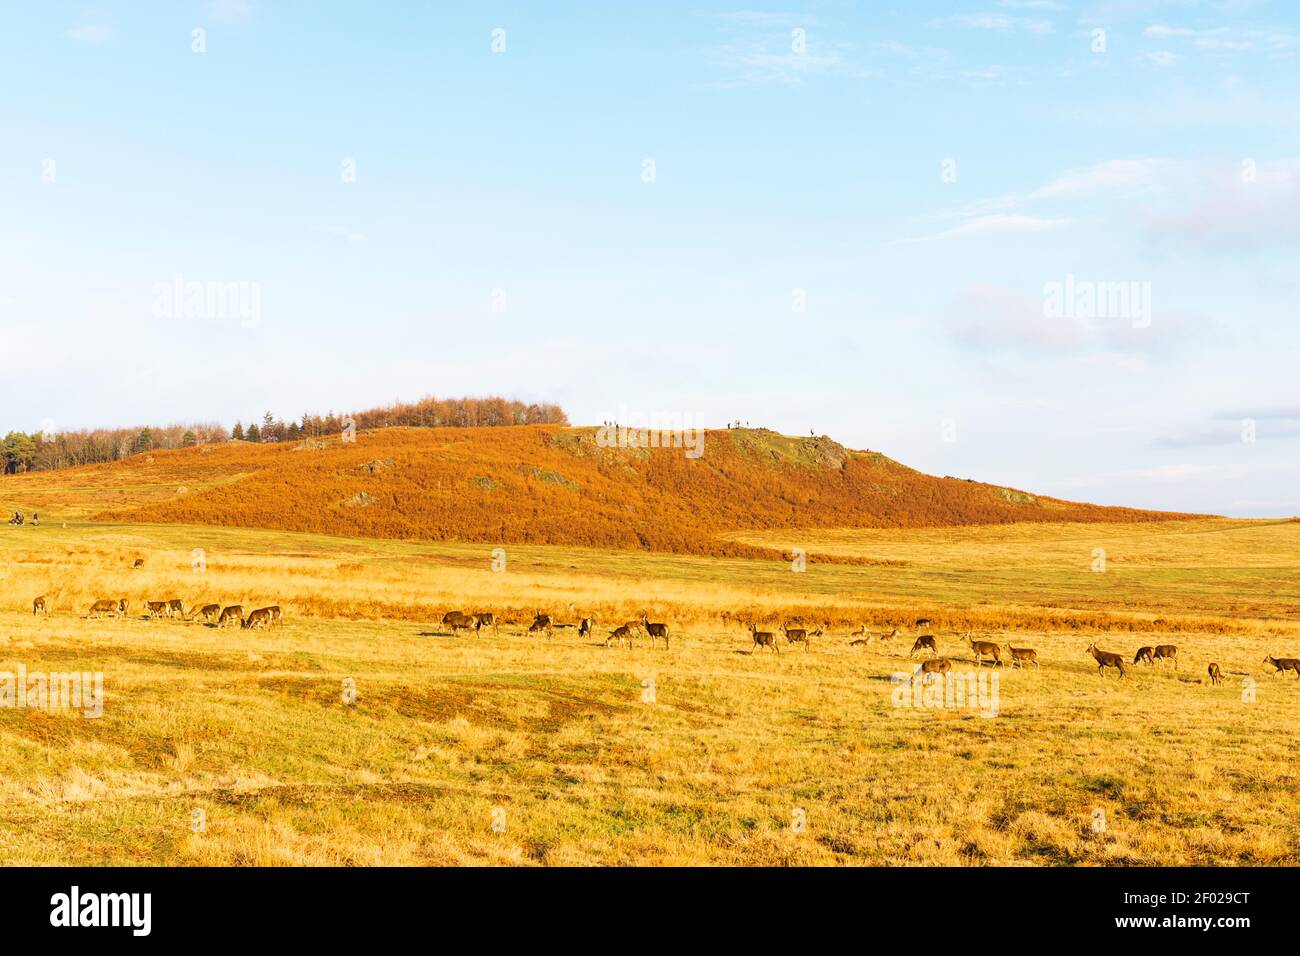 Grand paysage herbacé, avec une colline en arrière-plan. Bleu et brun et orange semblables à mars. Banque D'Images